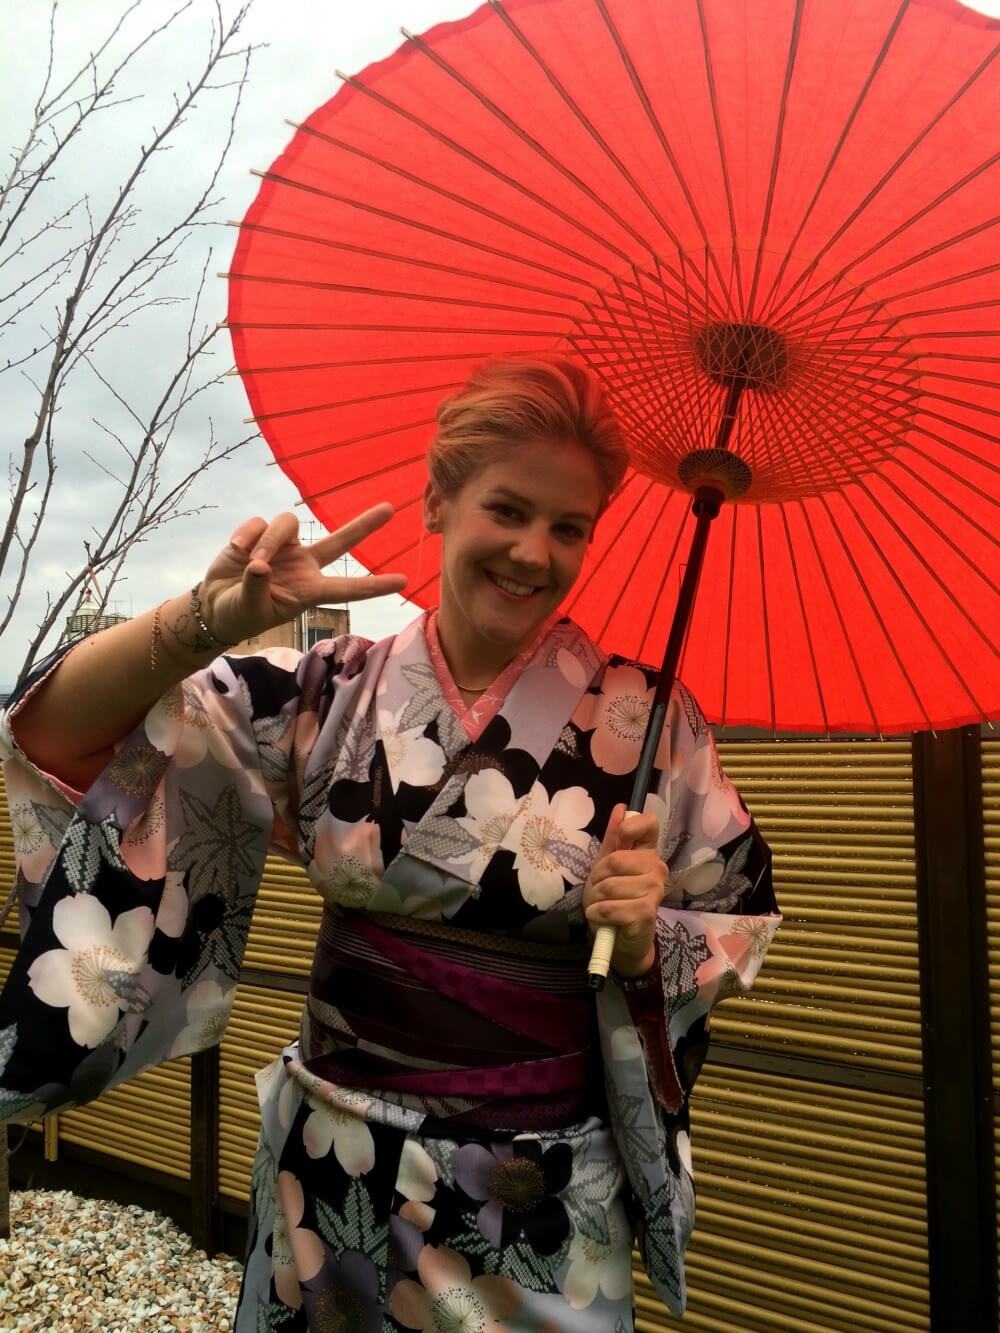 påklædning som geisha i Kyoto